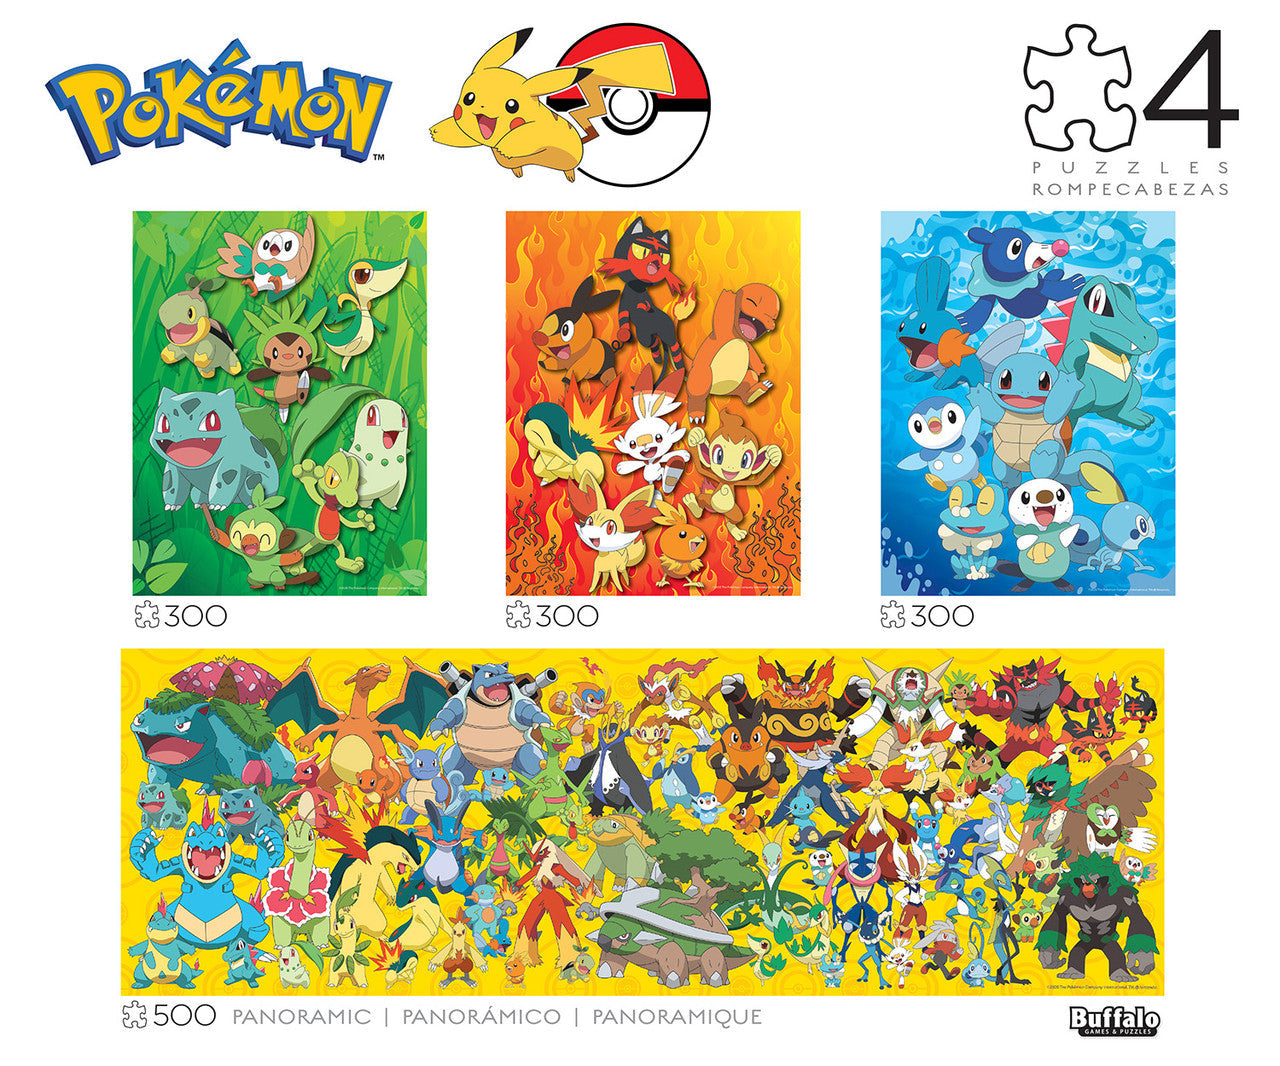 Pokémon Pikachu & Eevee Series 3 500 Piece Jigsaw Puzzle